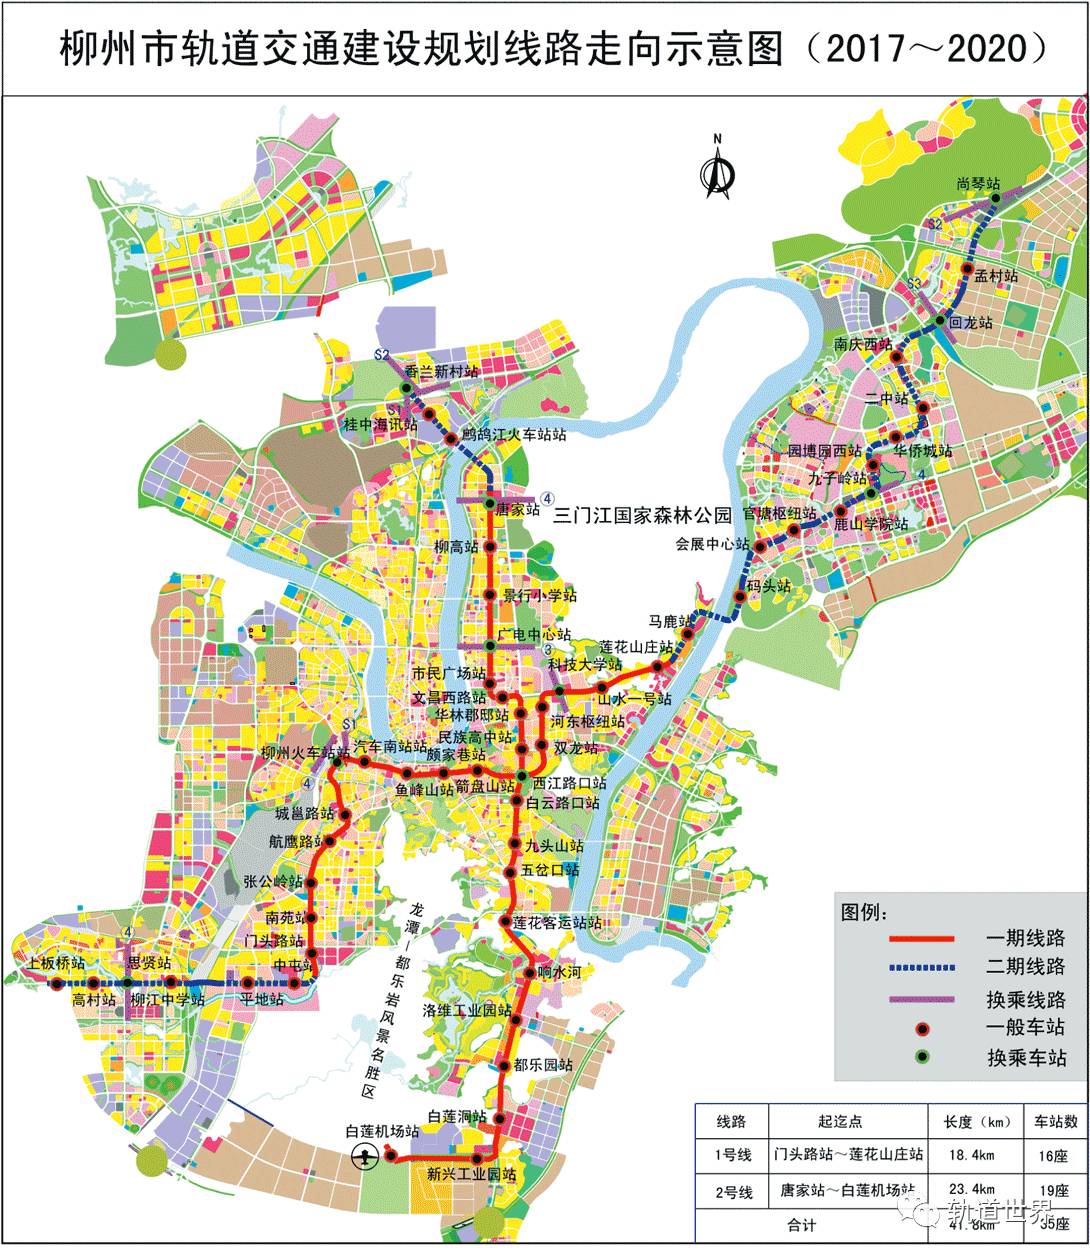 柳州市轨道交通建设规划线路走向示意图2017-2020